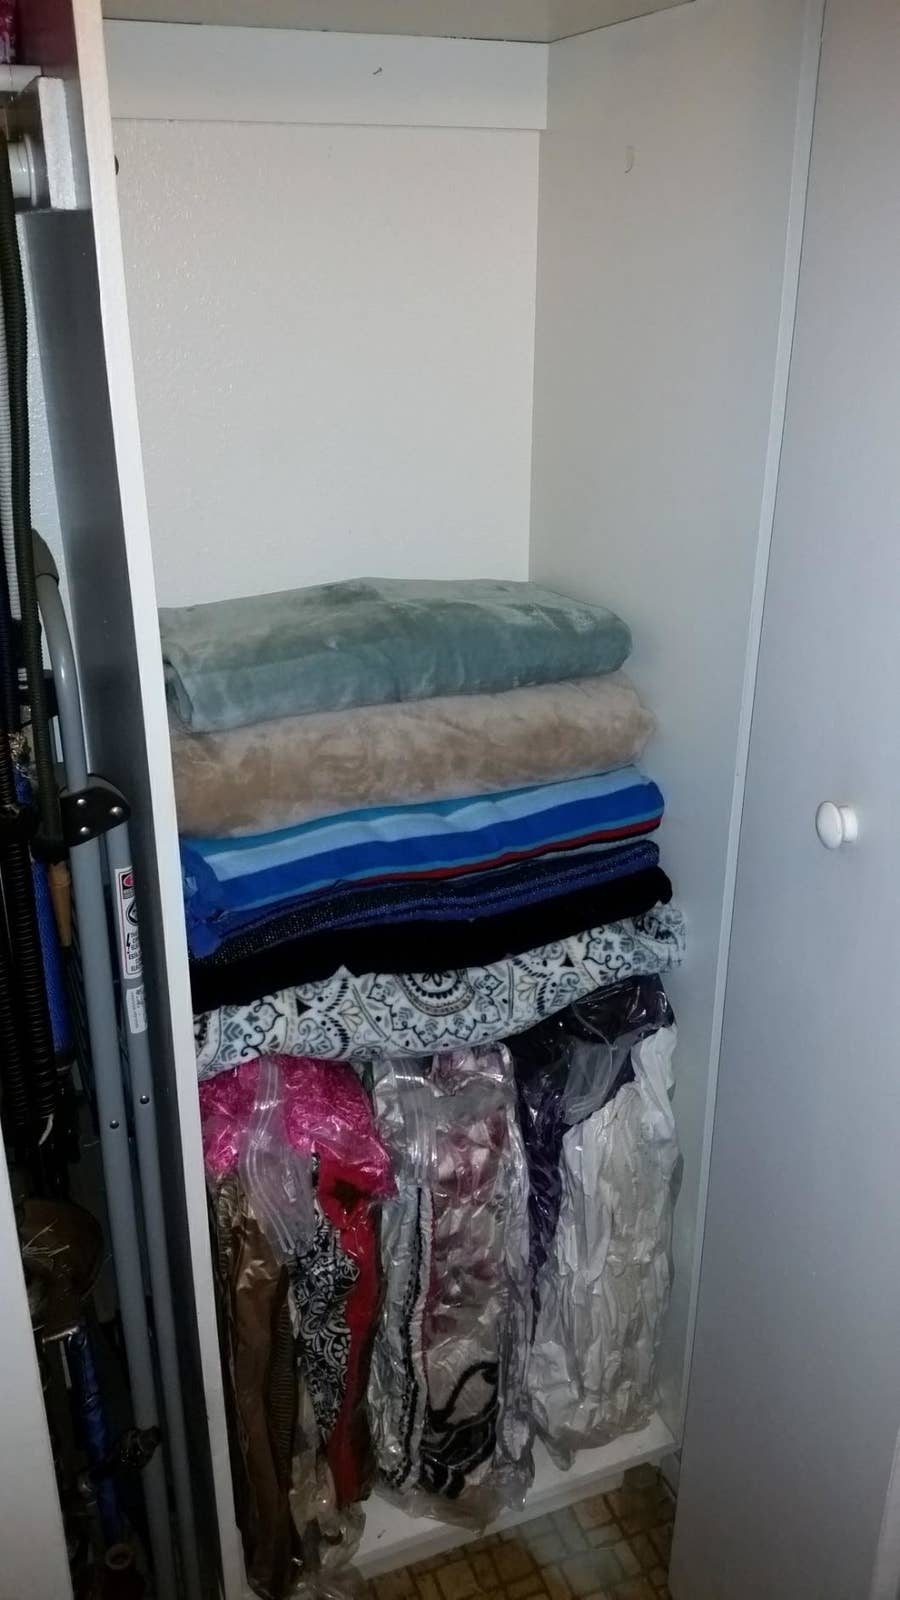 12 No-Closet Clothes Storage Ideas